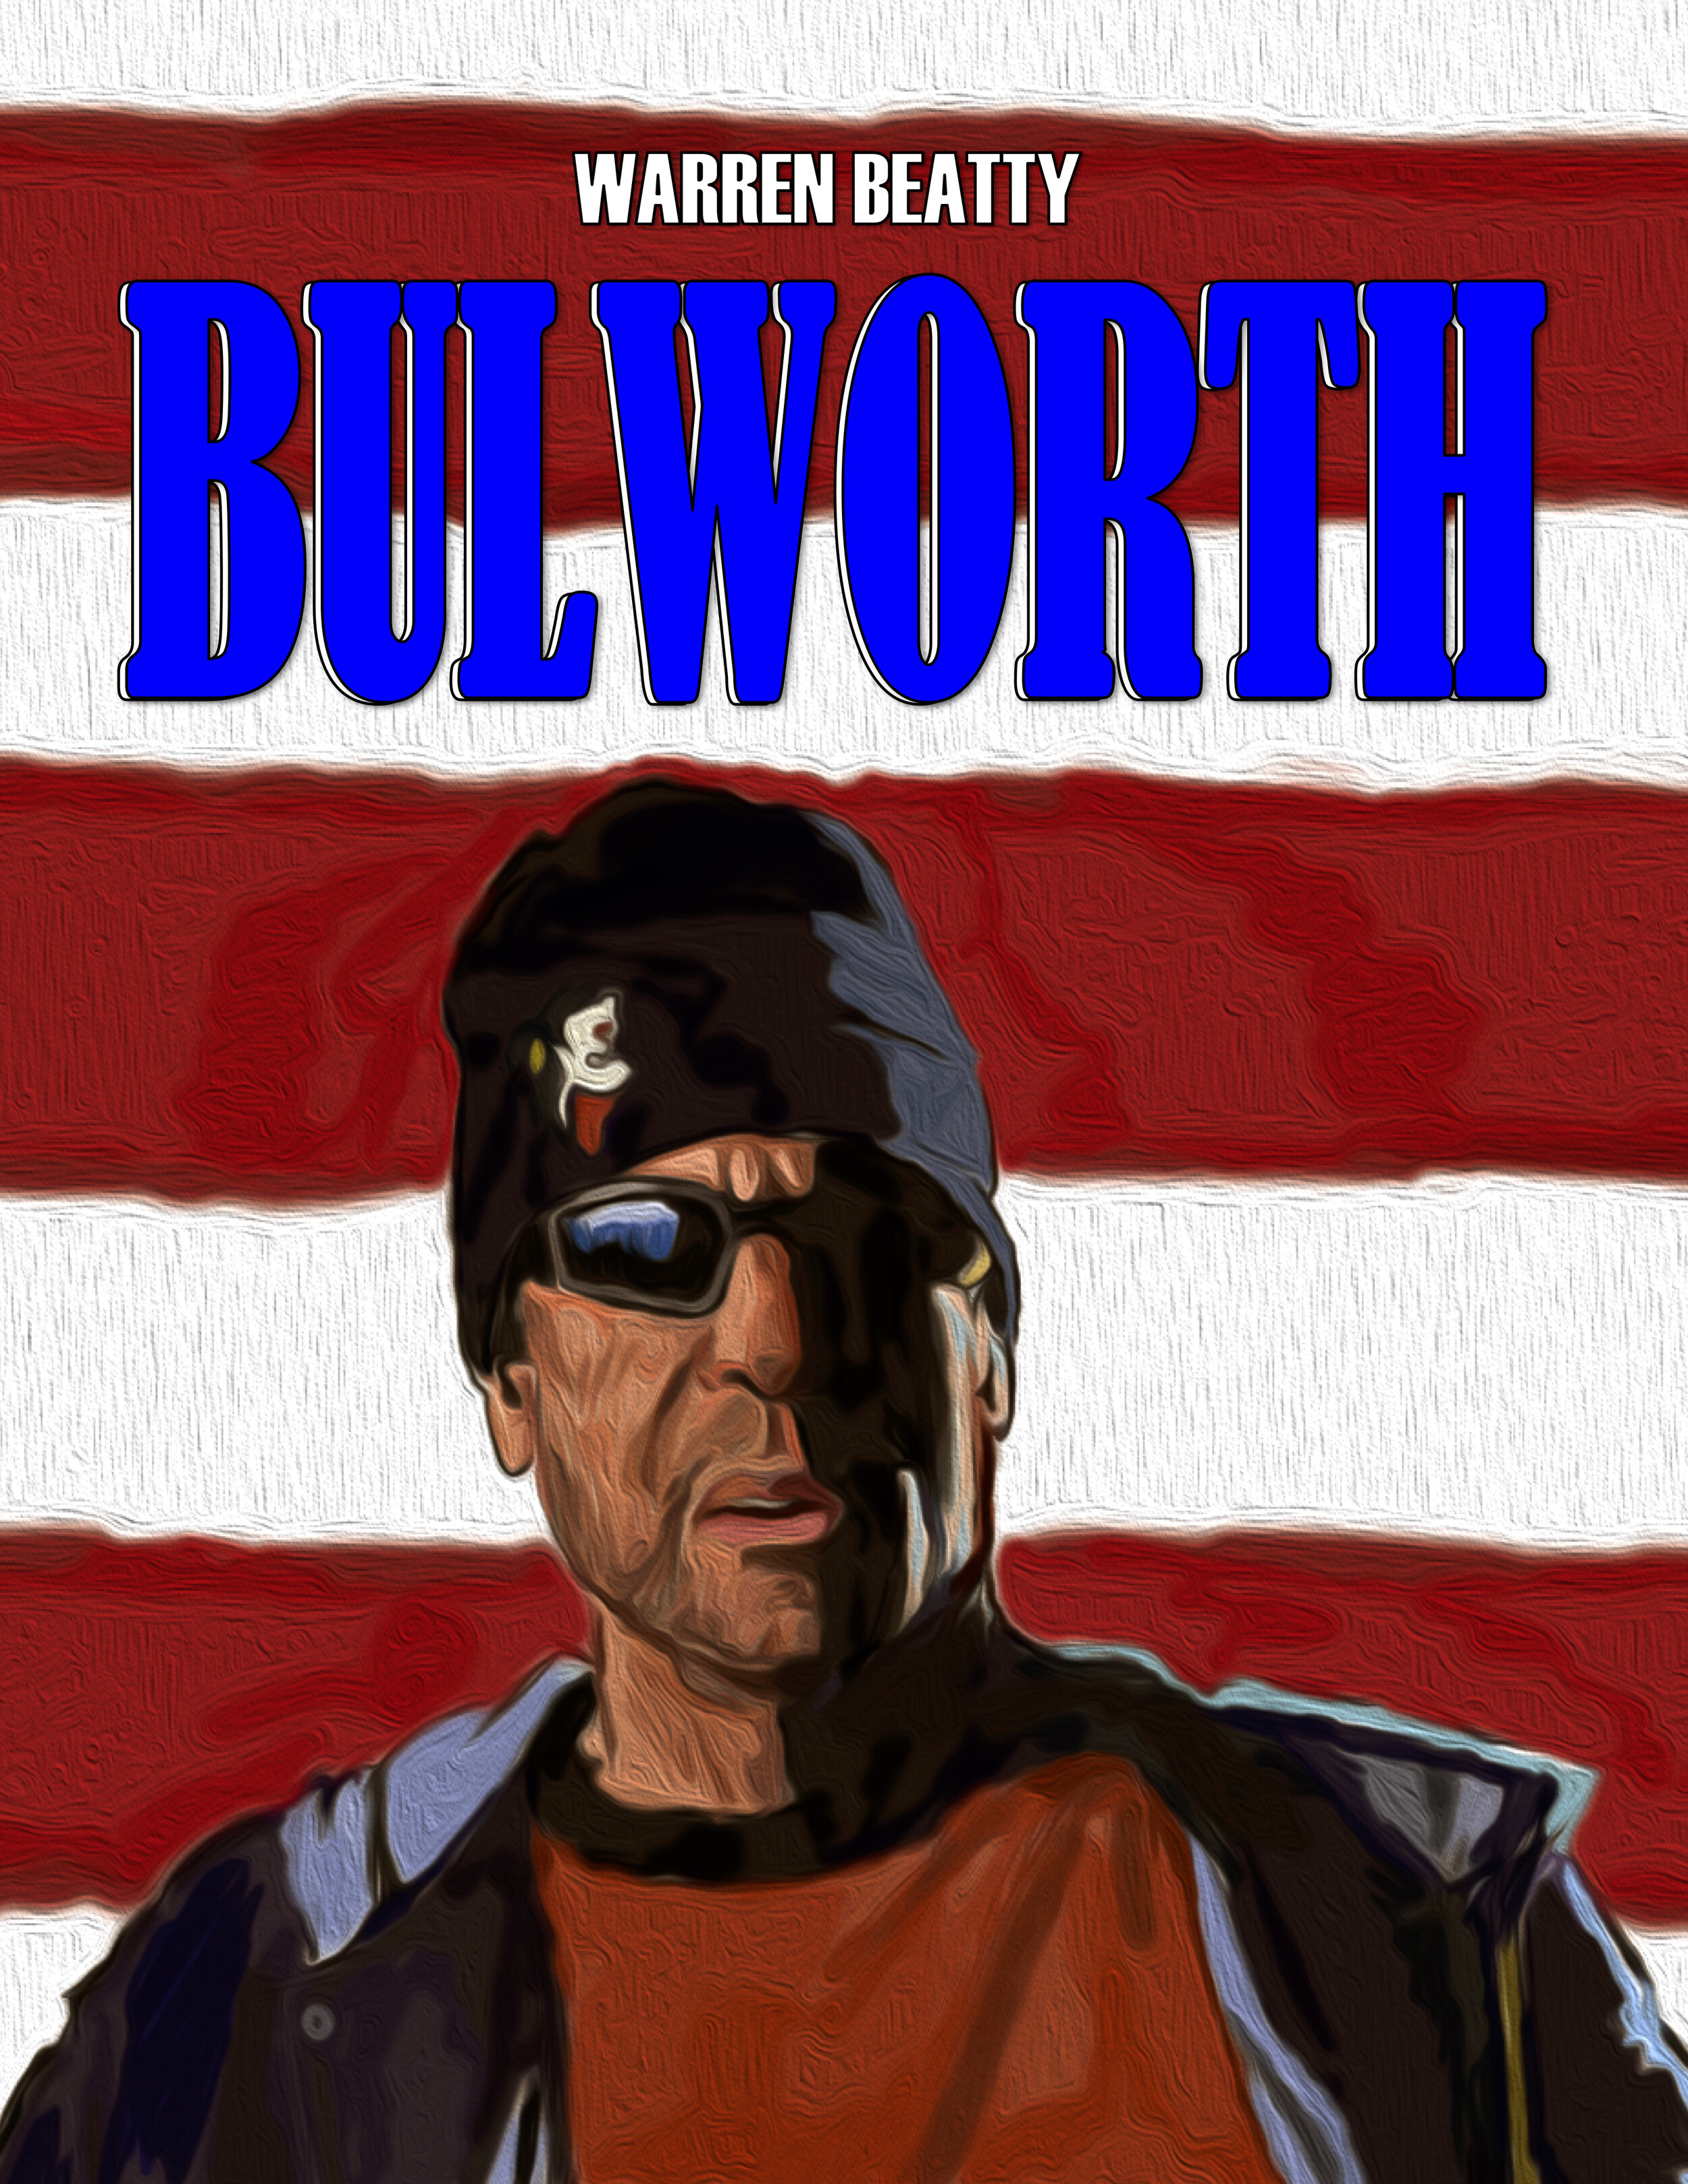 Bulworth (1998)